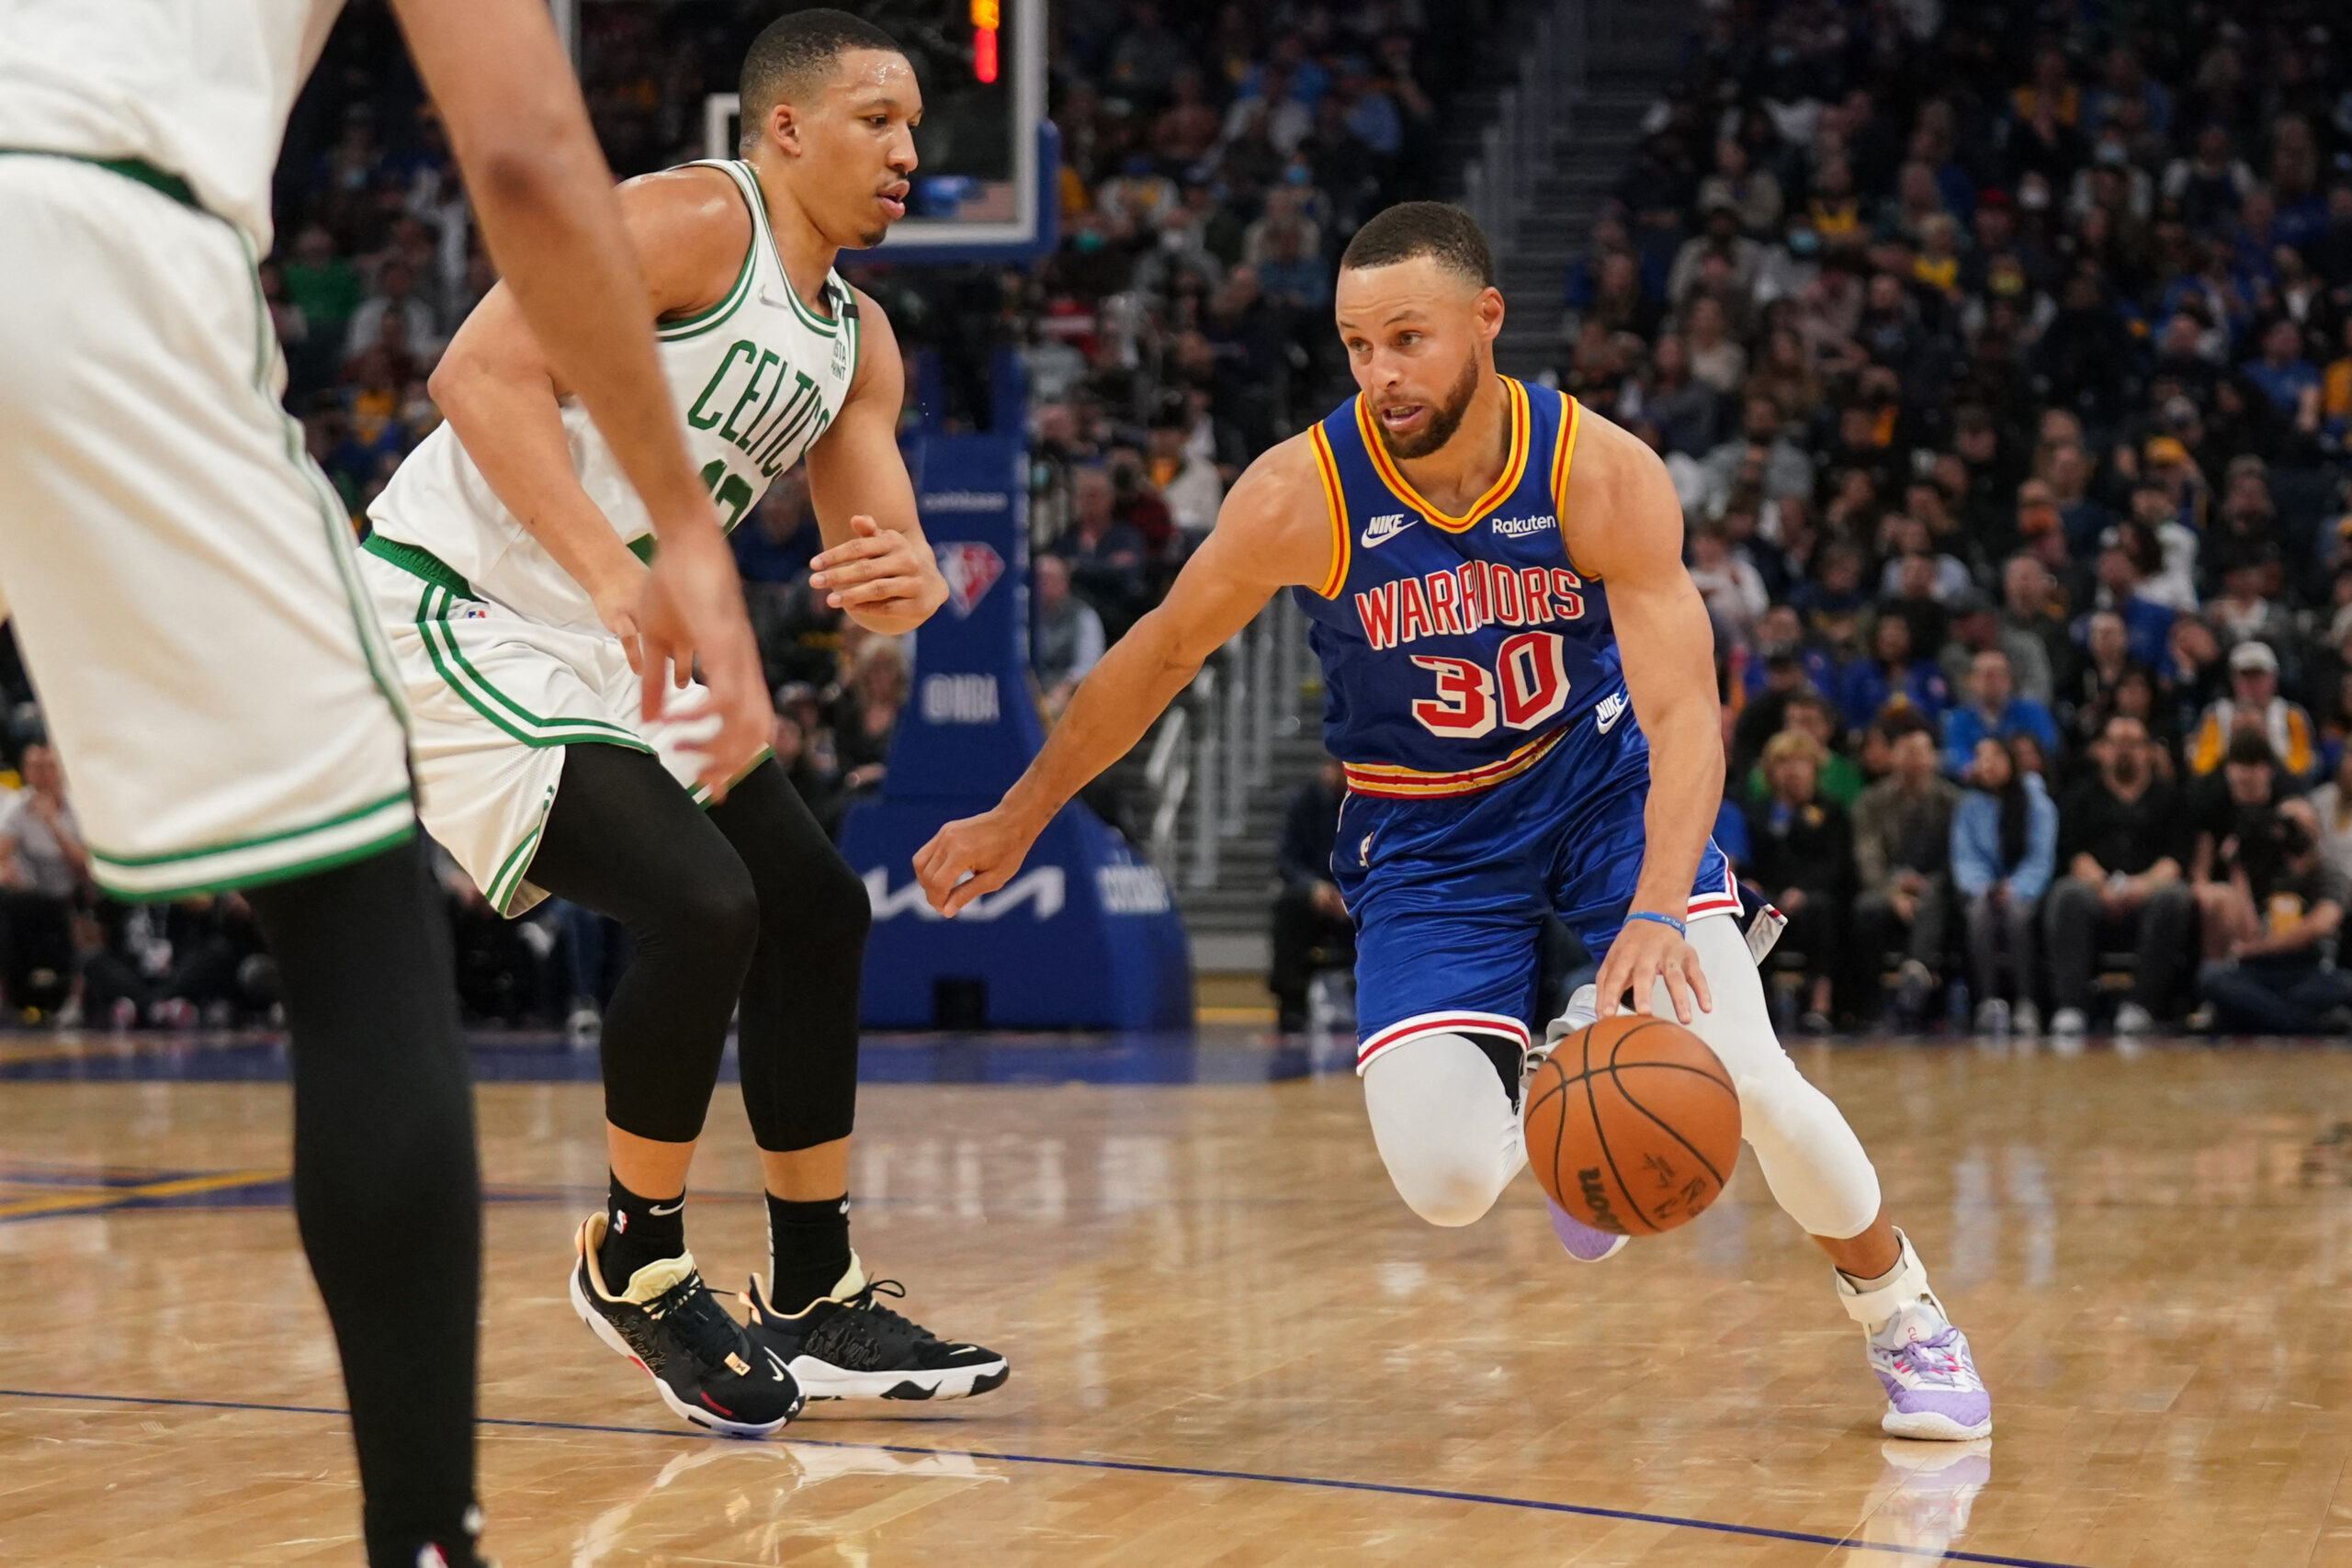 Stephen Curry se torna o 2º jogador com mais cestas de três na NBA